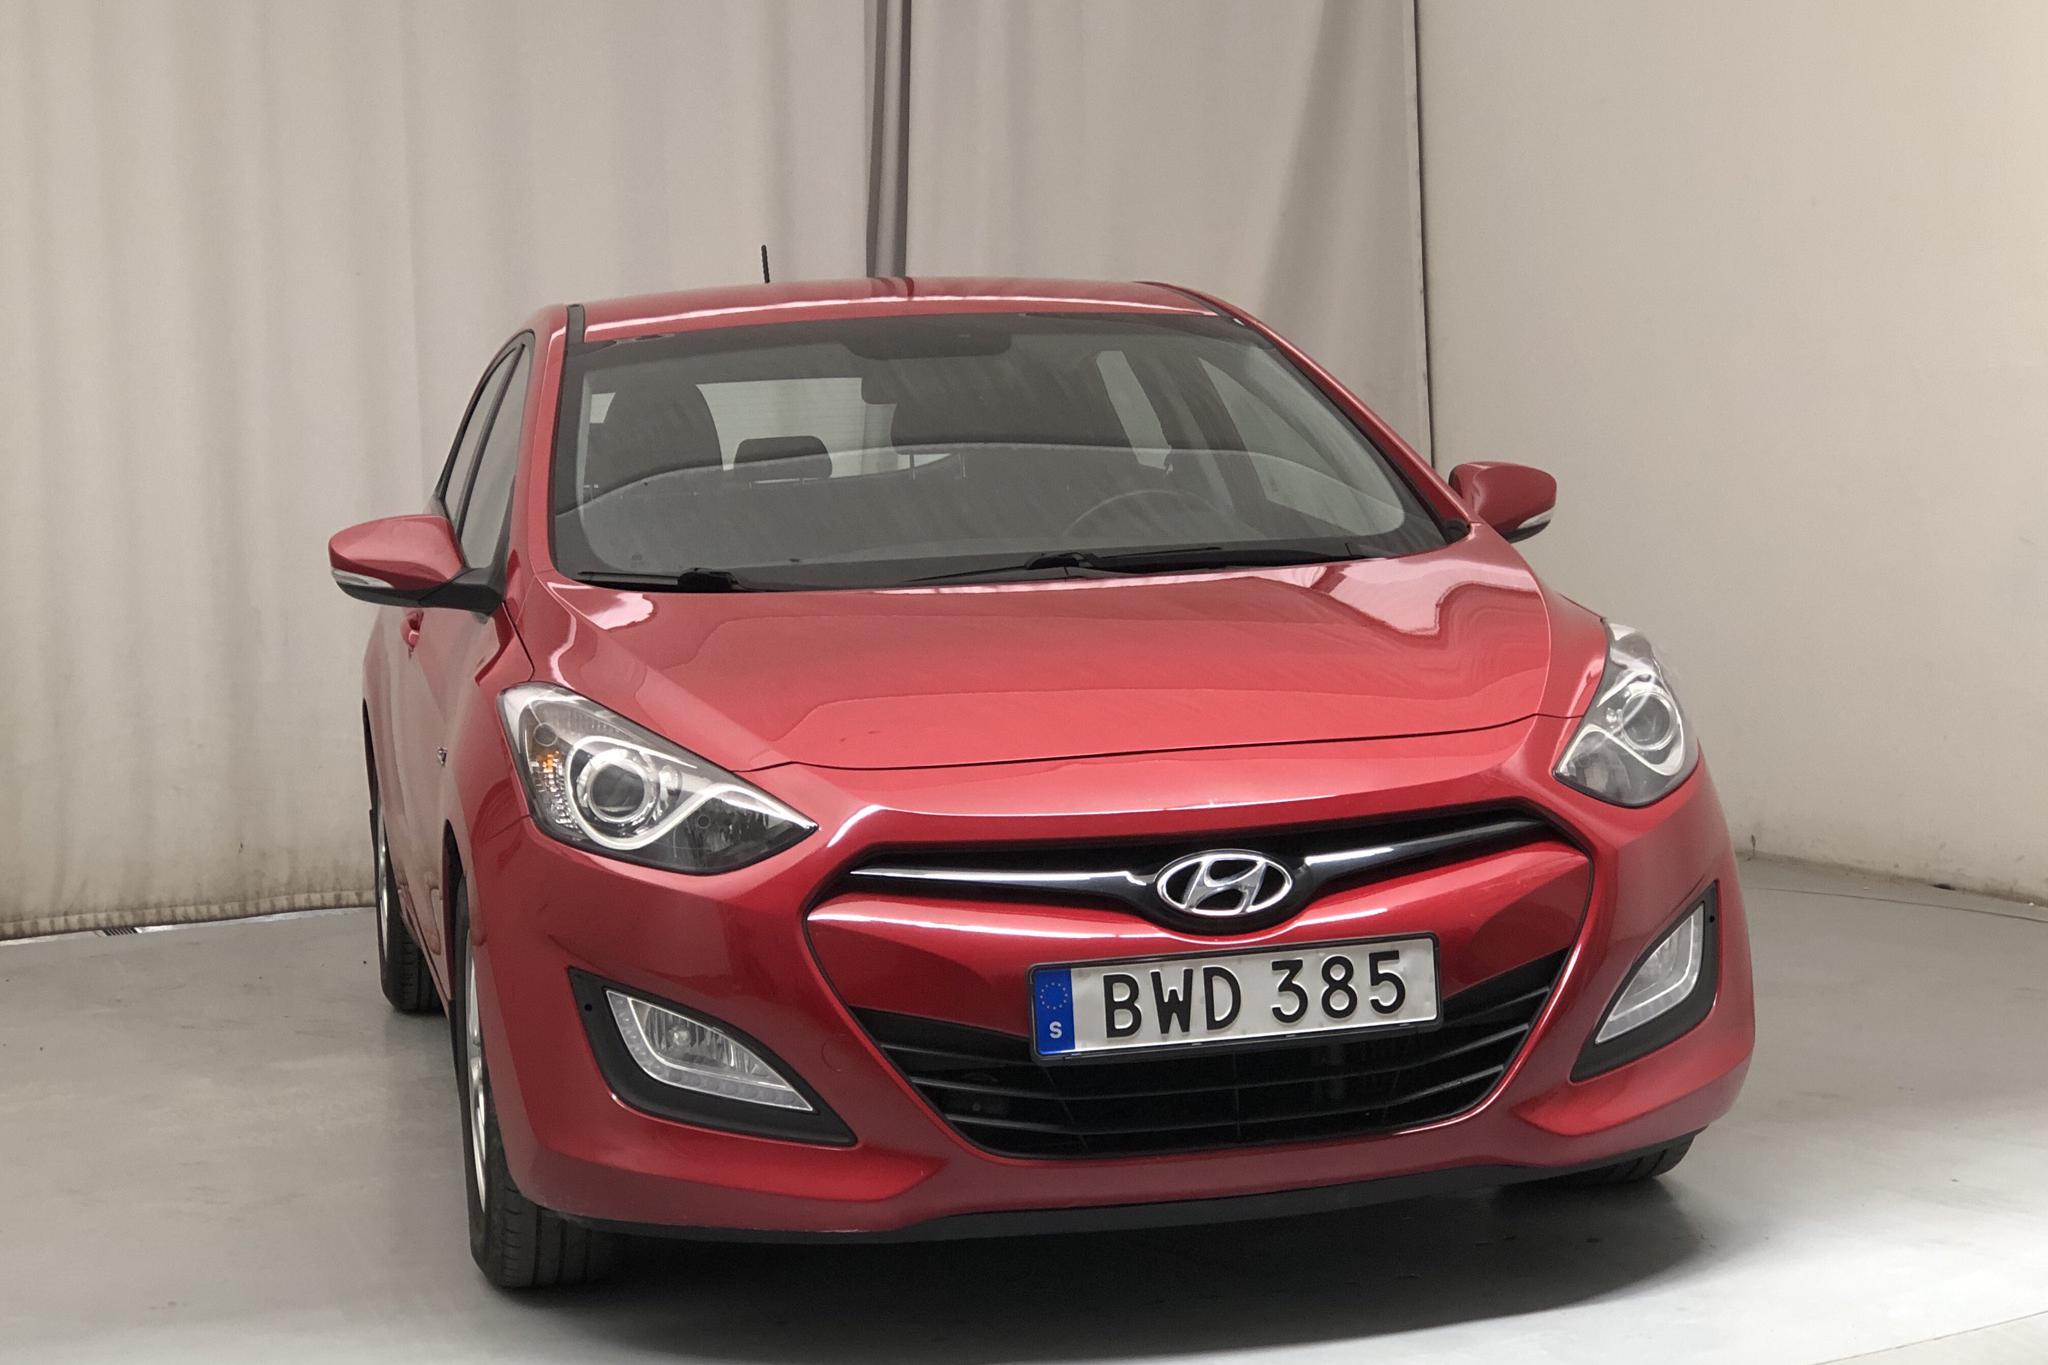 Hyundai i30 1.6 CRDi 5dr (110hk) - 9 413 mil - Manuell - röd - 2014